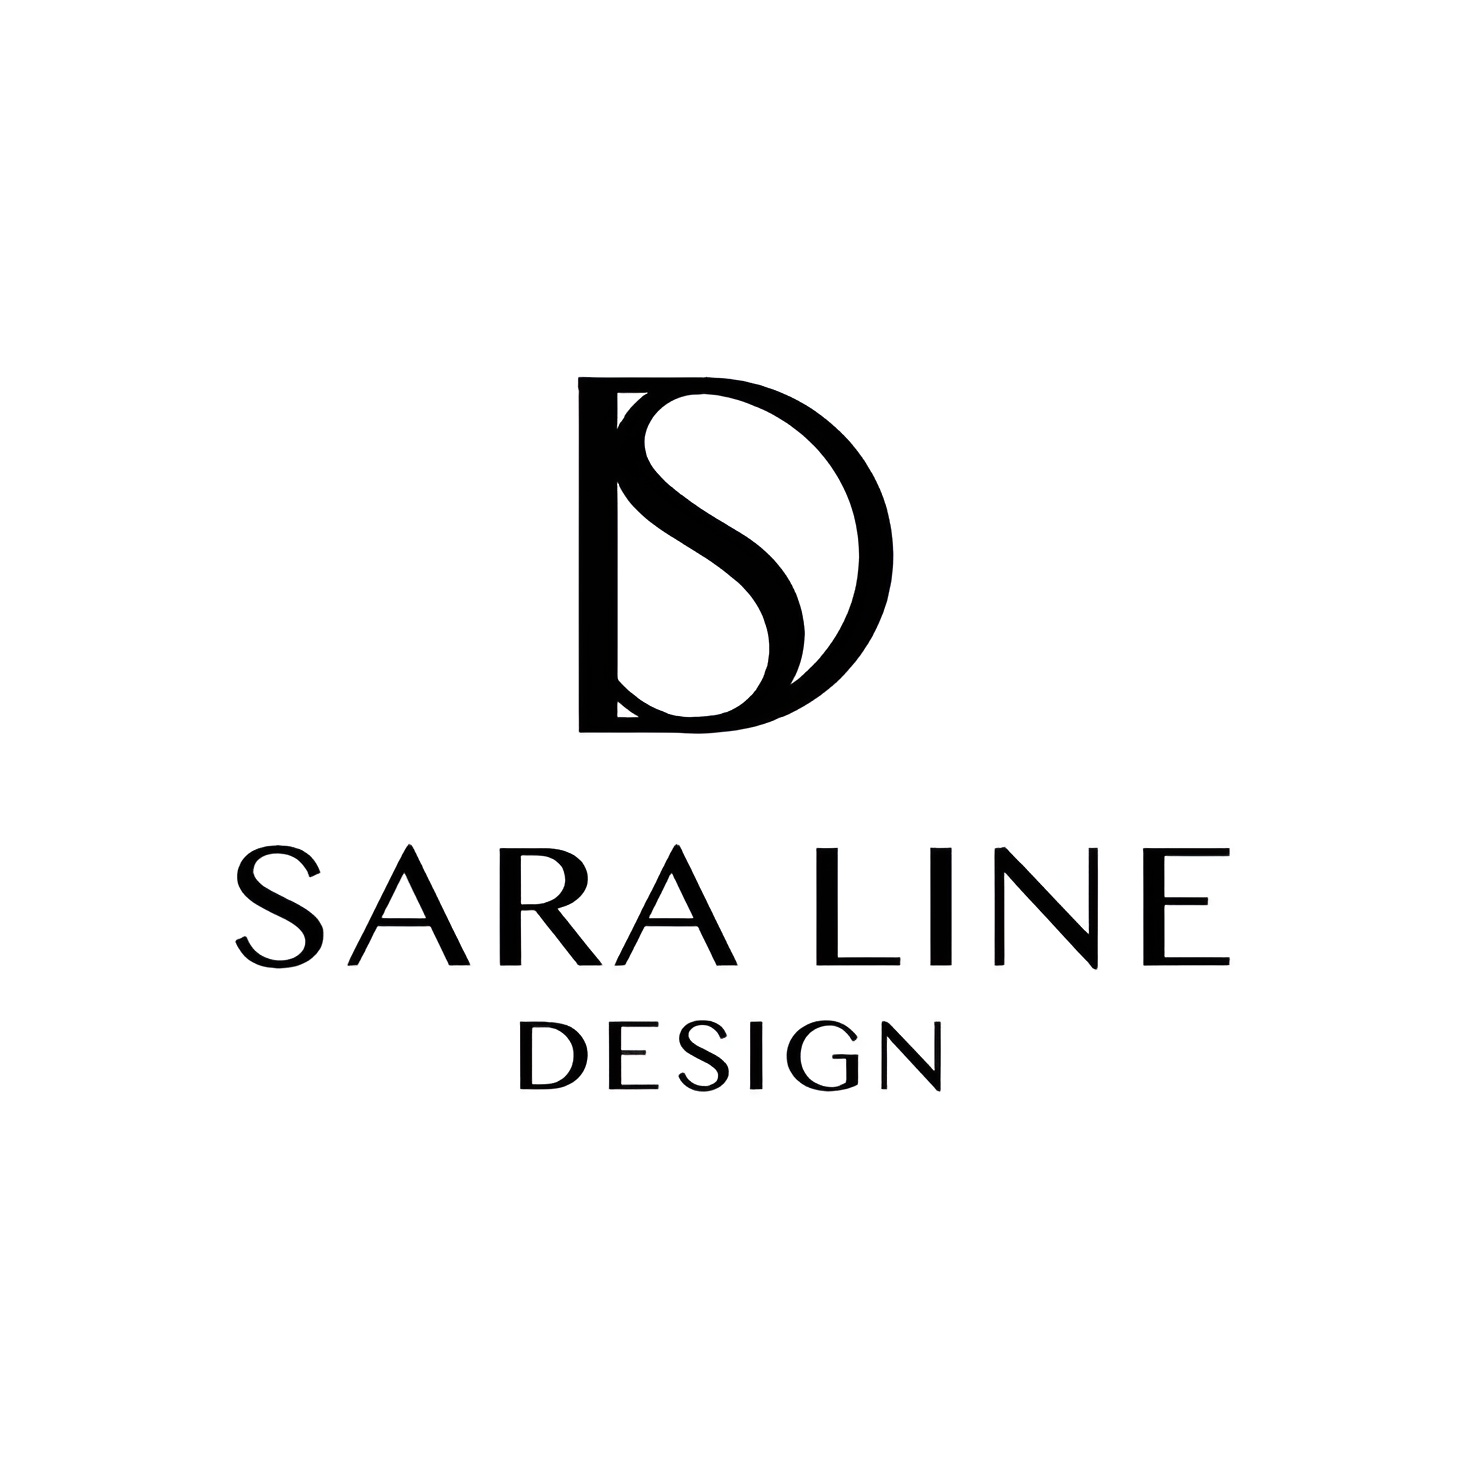 Sara line